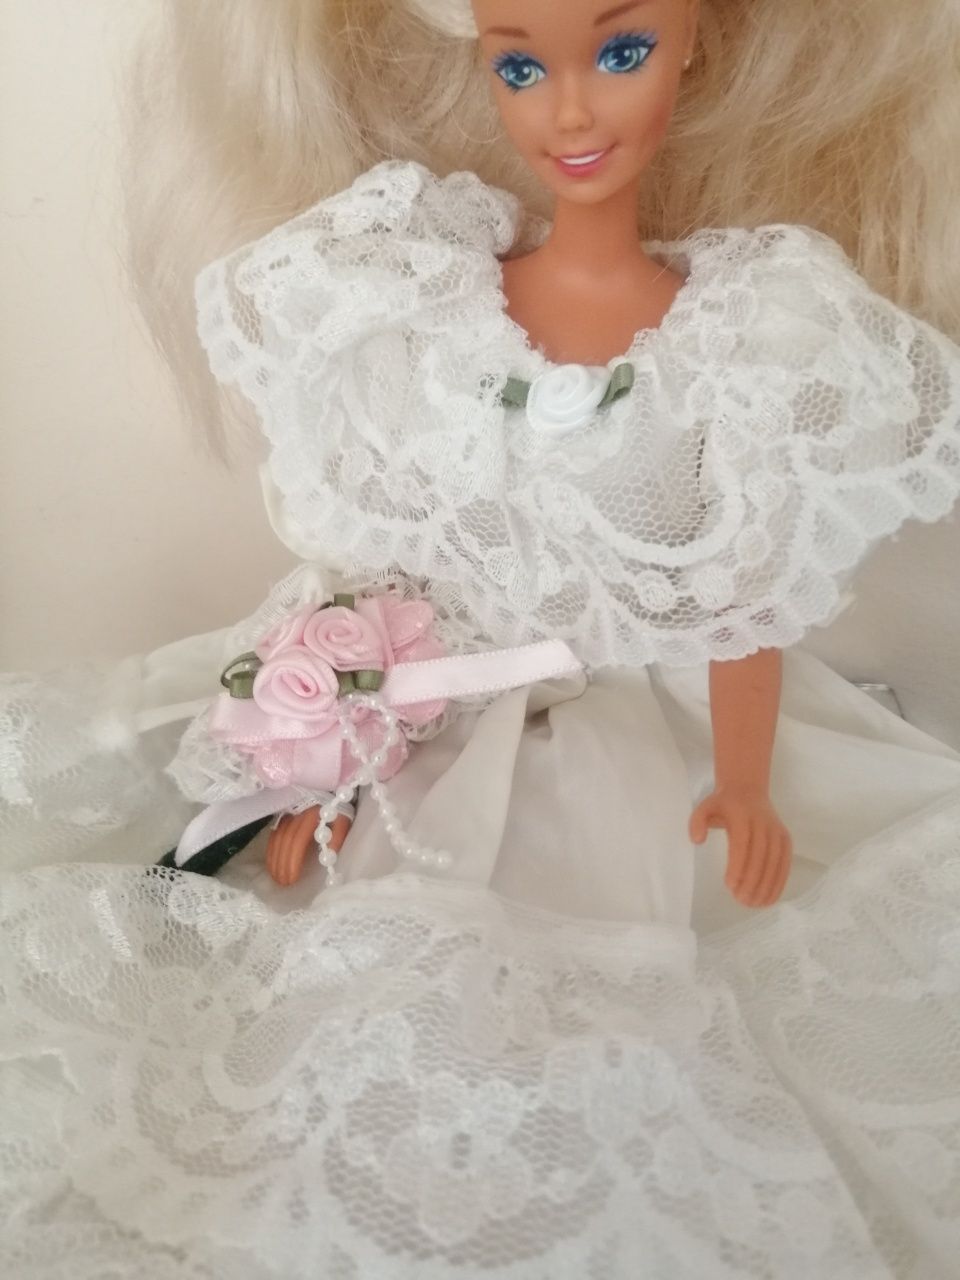 Lalka Barbie vintage 1976/1966 w sukni ślubnej